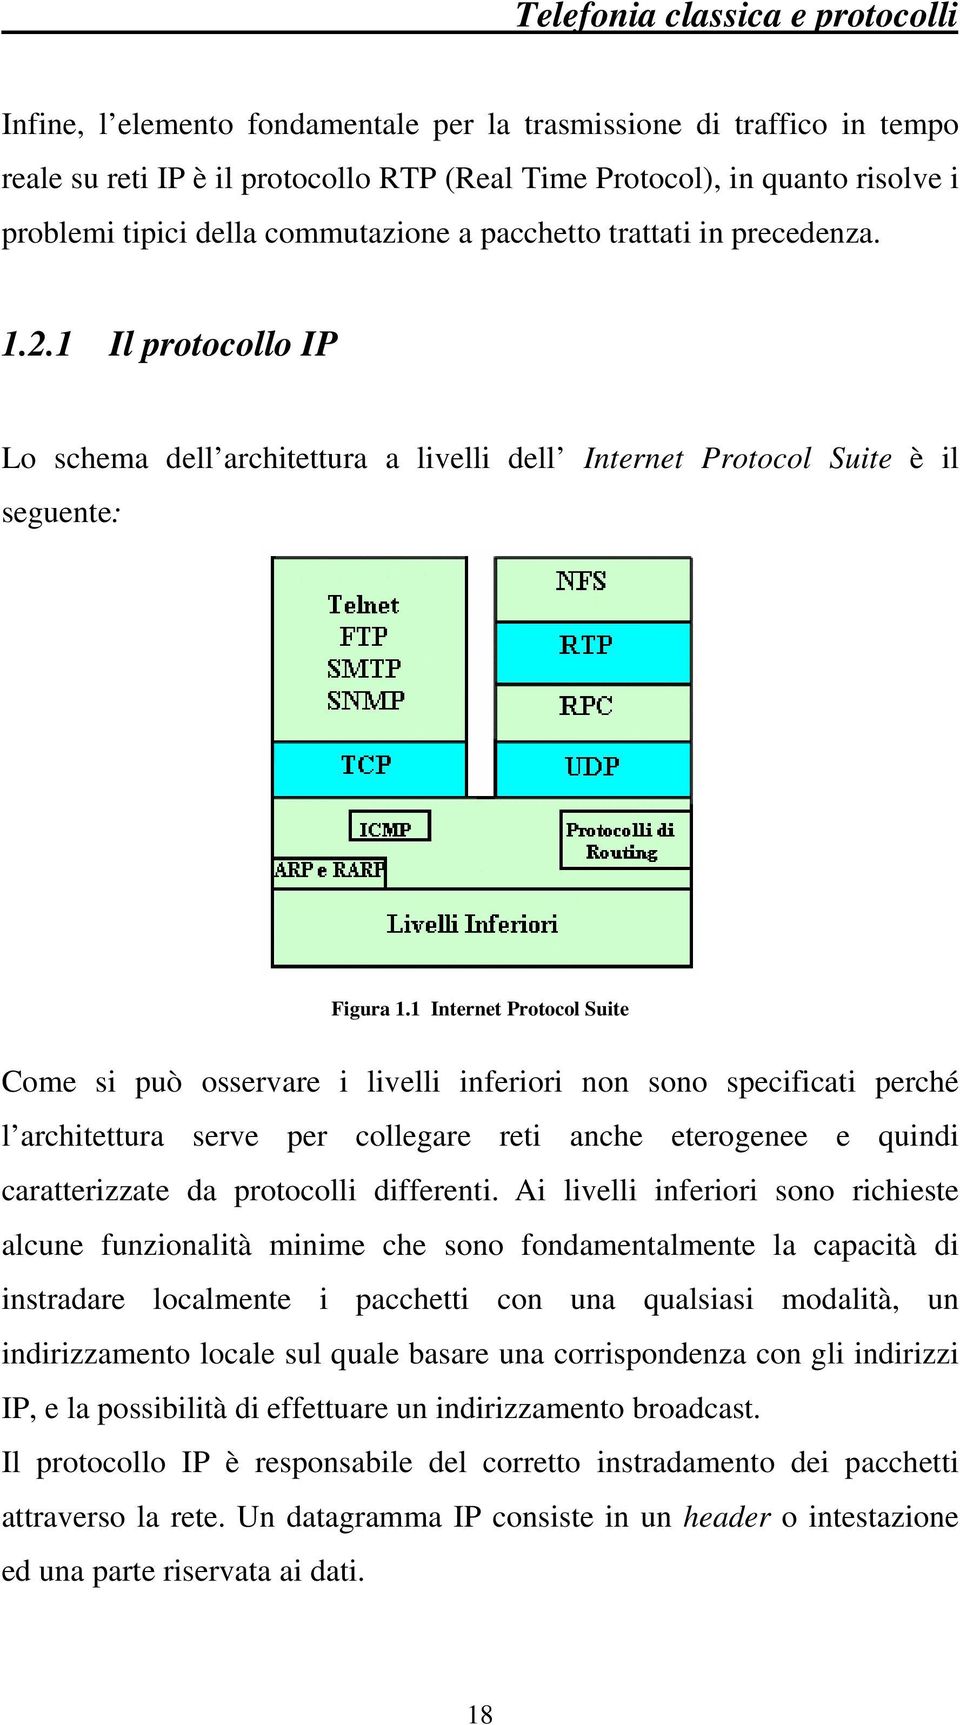 1 Internet Protocol Suite Come si può osservare i livelli inferiori non sono specificati perché l architettura serve per collegare reti anche eterogenee e quindi caratterizzate da protocolli